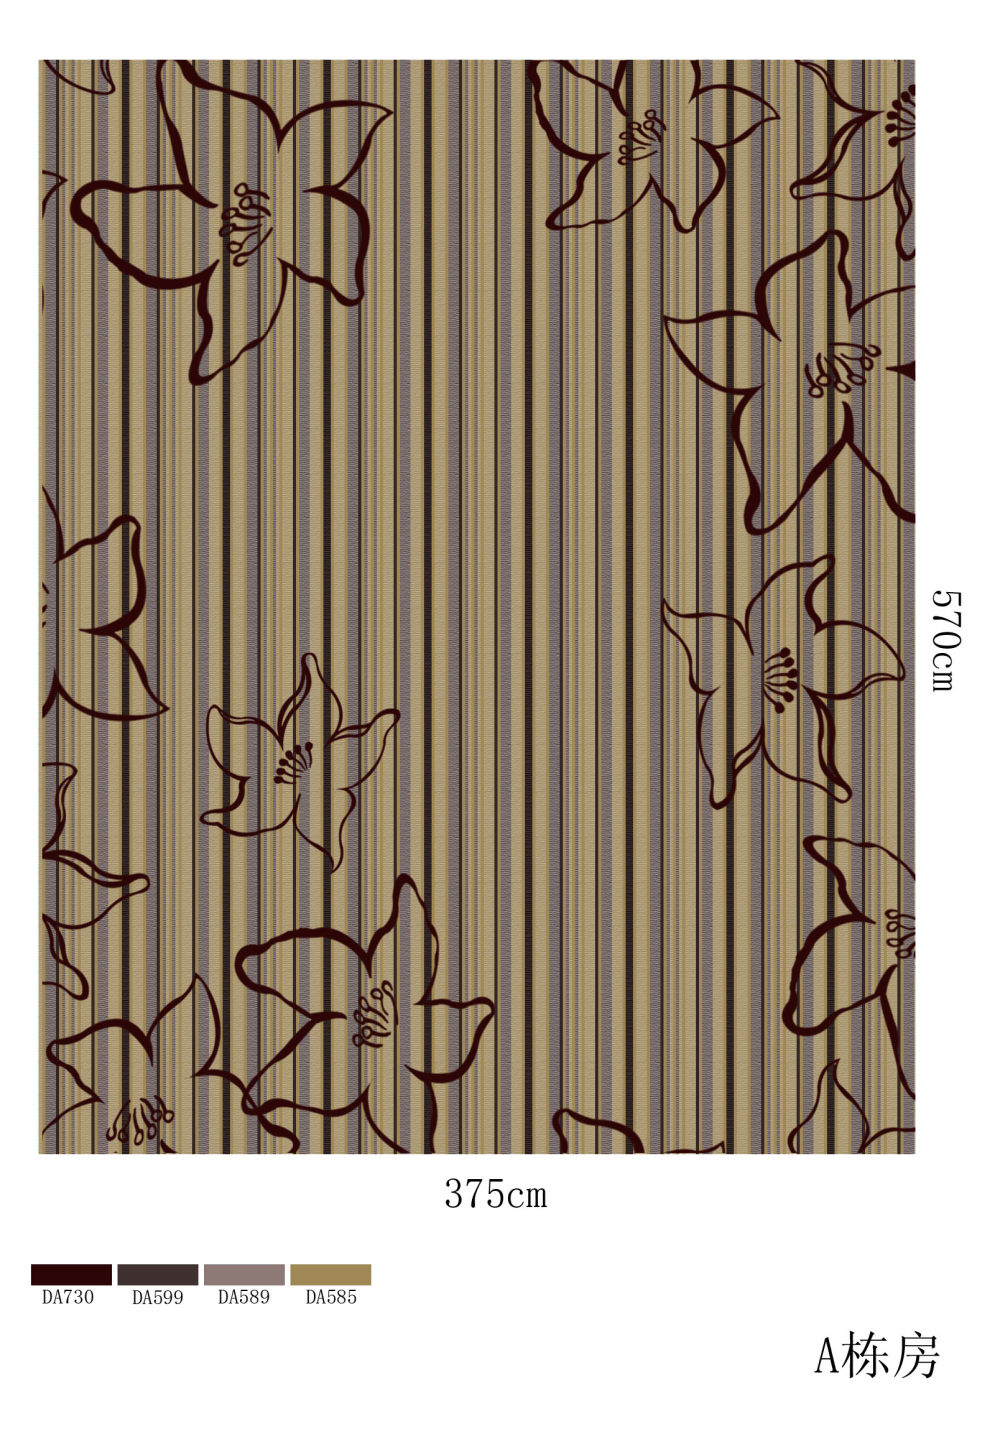 郑中(CCD)--专用地毯高清大图161P_A栋房效果图.jpg